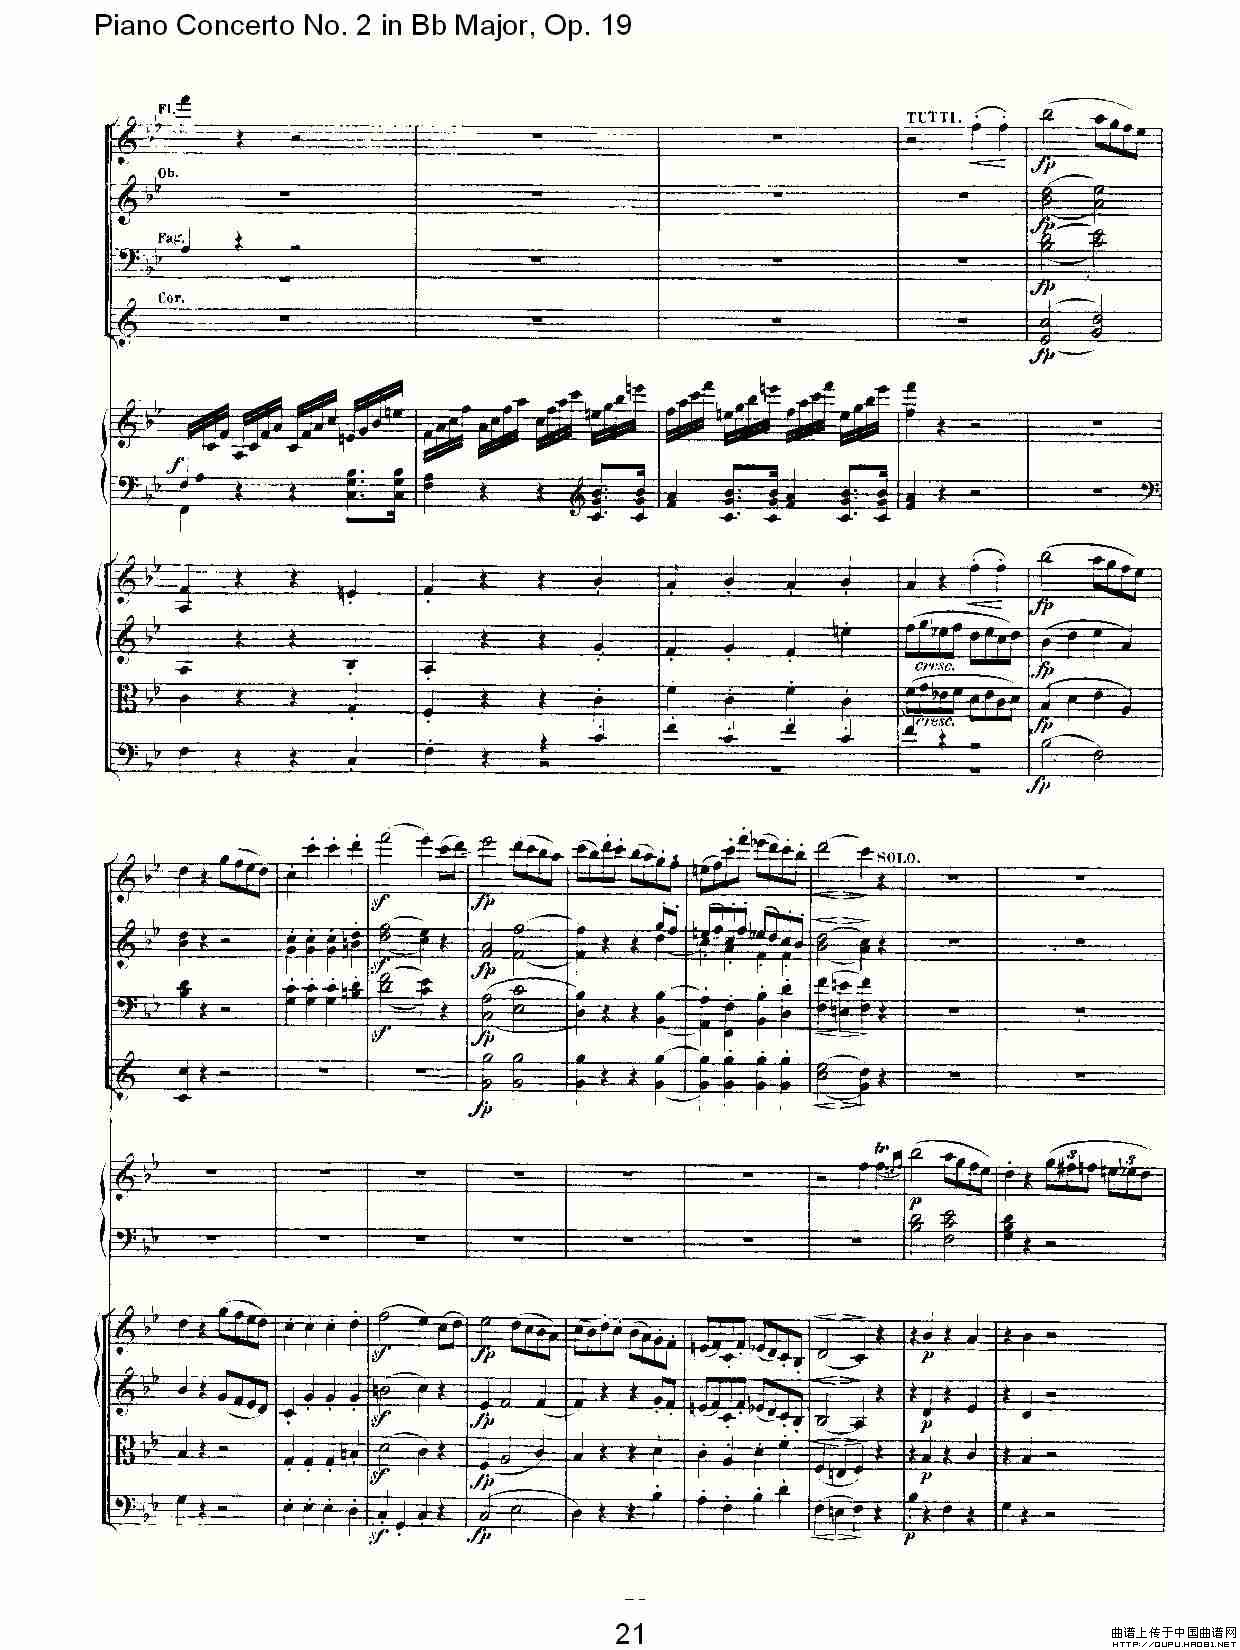 Bb大调钢琴第二协奏曲 Op. 19 第一乐章钢琴曲谱（图11）